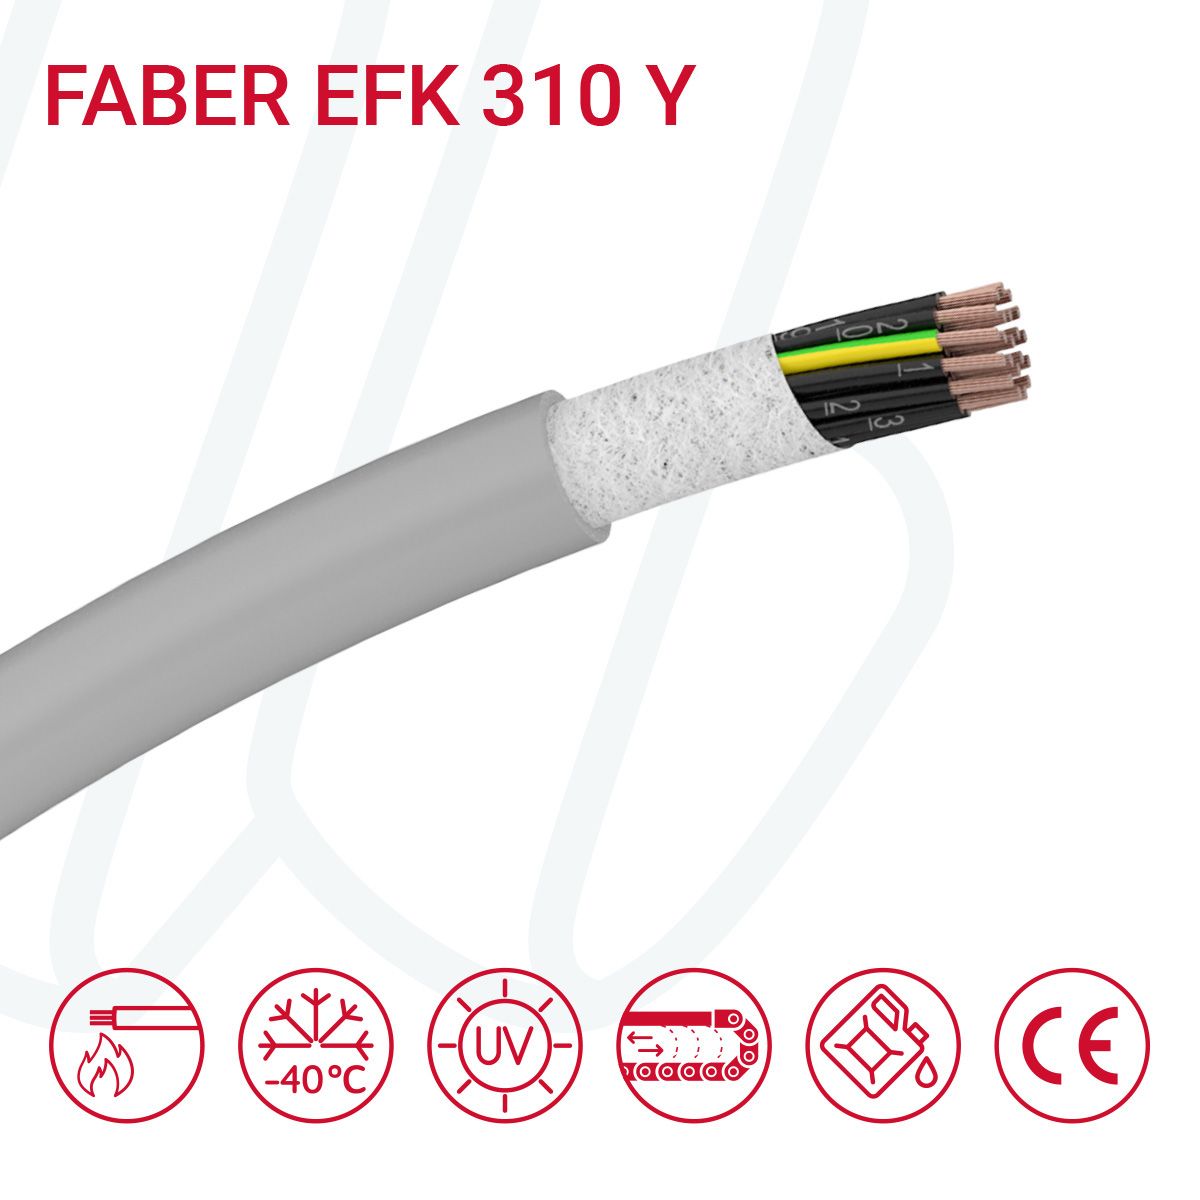 Кабель FABER EFK 310 Y 12G0.75 cUL сірий, 12, 0.75